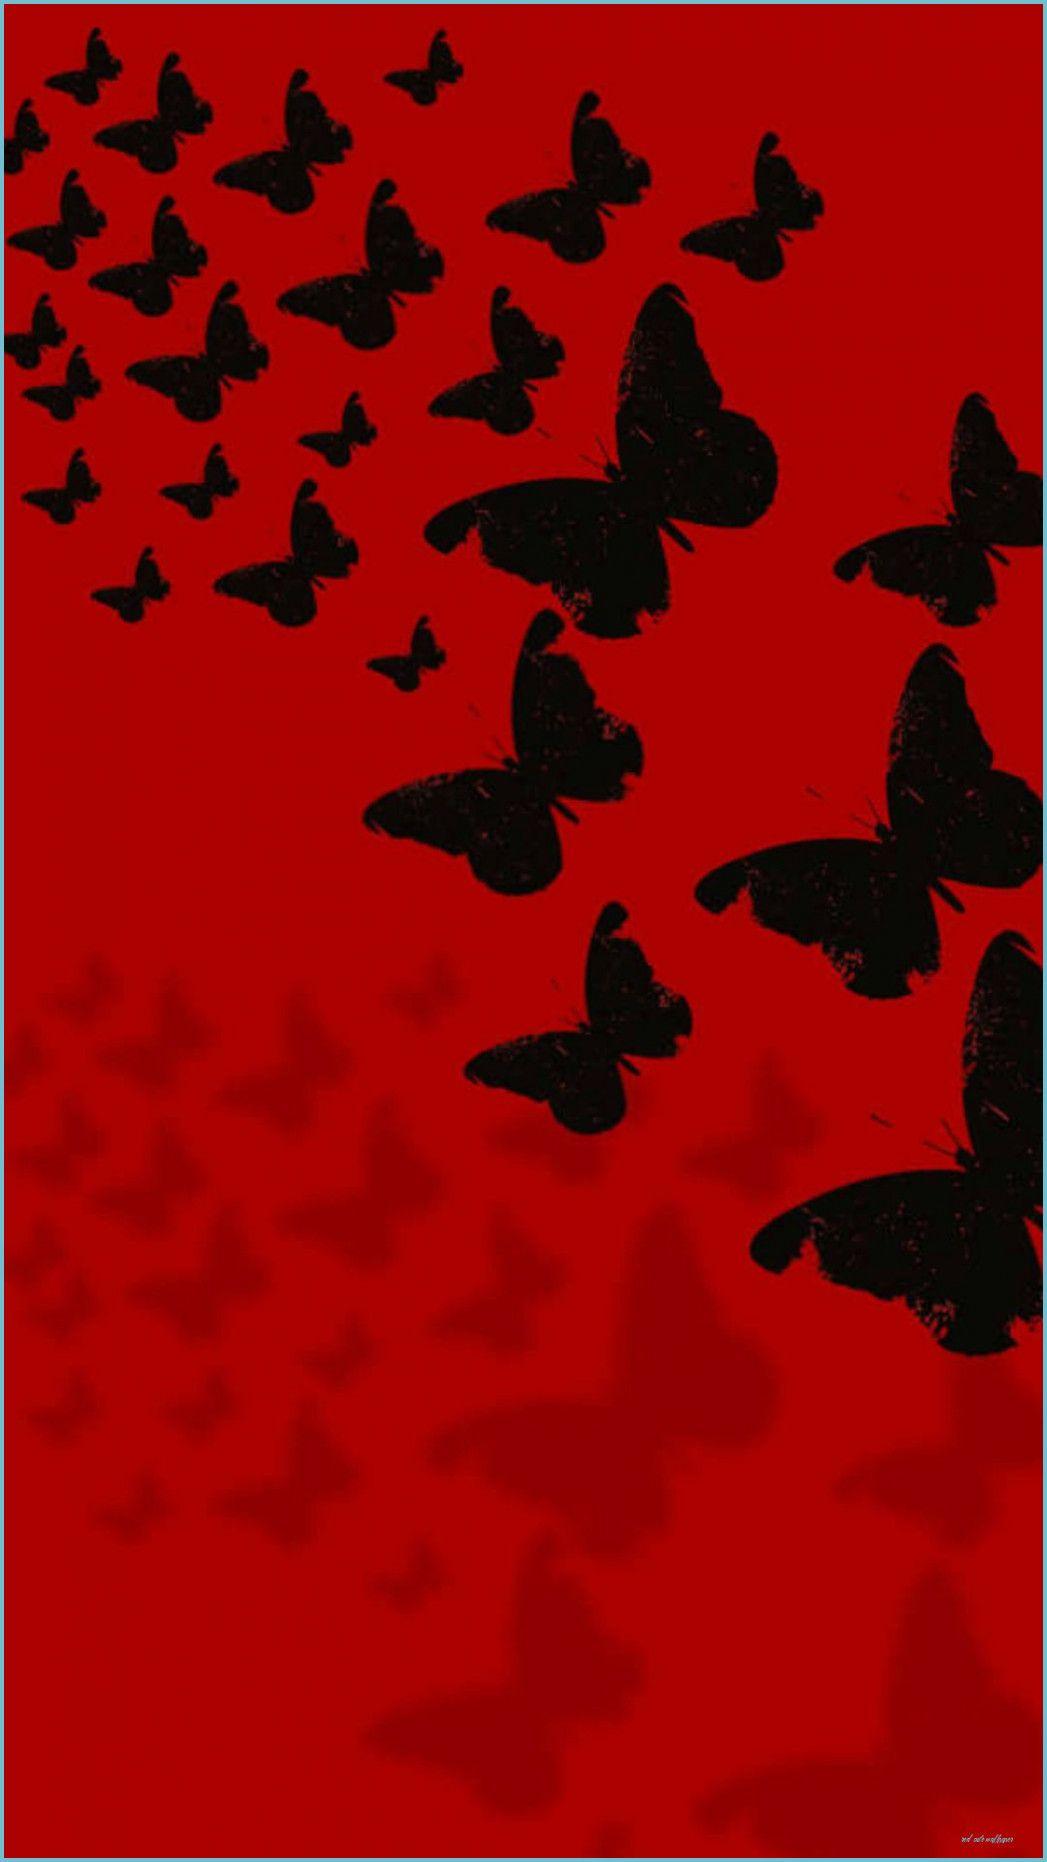 Hình nền bươm bướm đỏ đáng yêu sẽ làm cho màn hình điện thoại của bạn thêm sống động và nổi bật. Từ các mẫu hình nền nhỏ xinh cho tới những hình nền kết hợp với hoa văn, tất cả sẽ mang đến cho bạn sự tươi trẻ và vui nhộn.